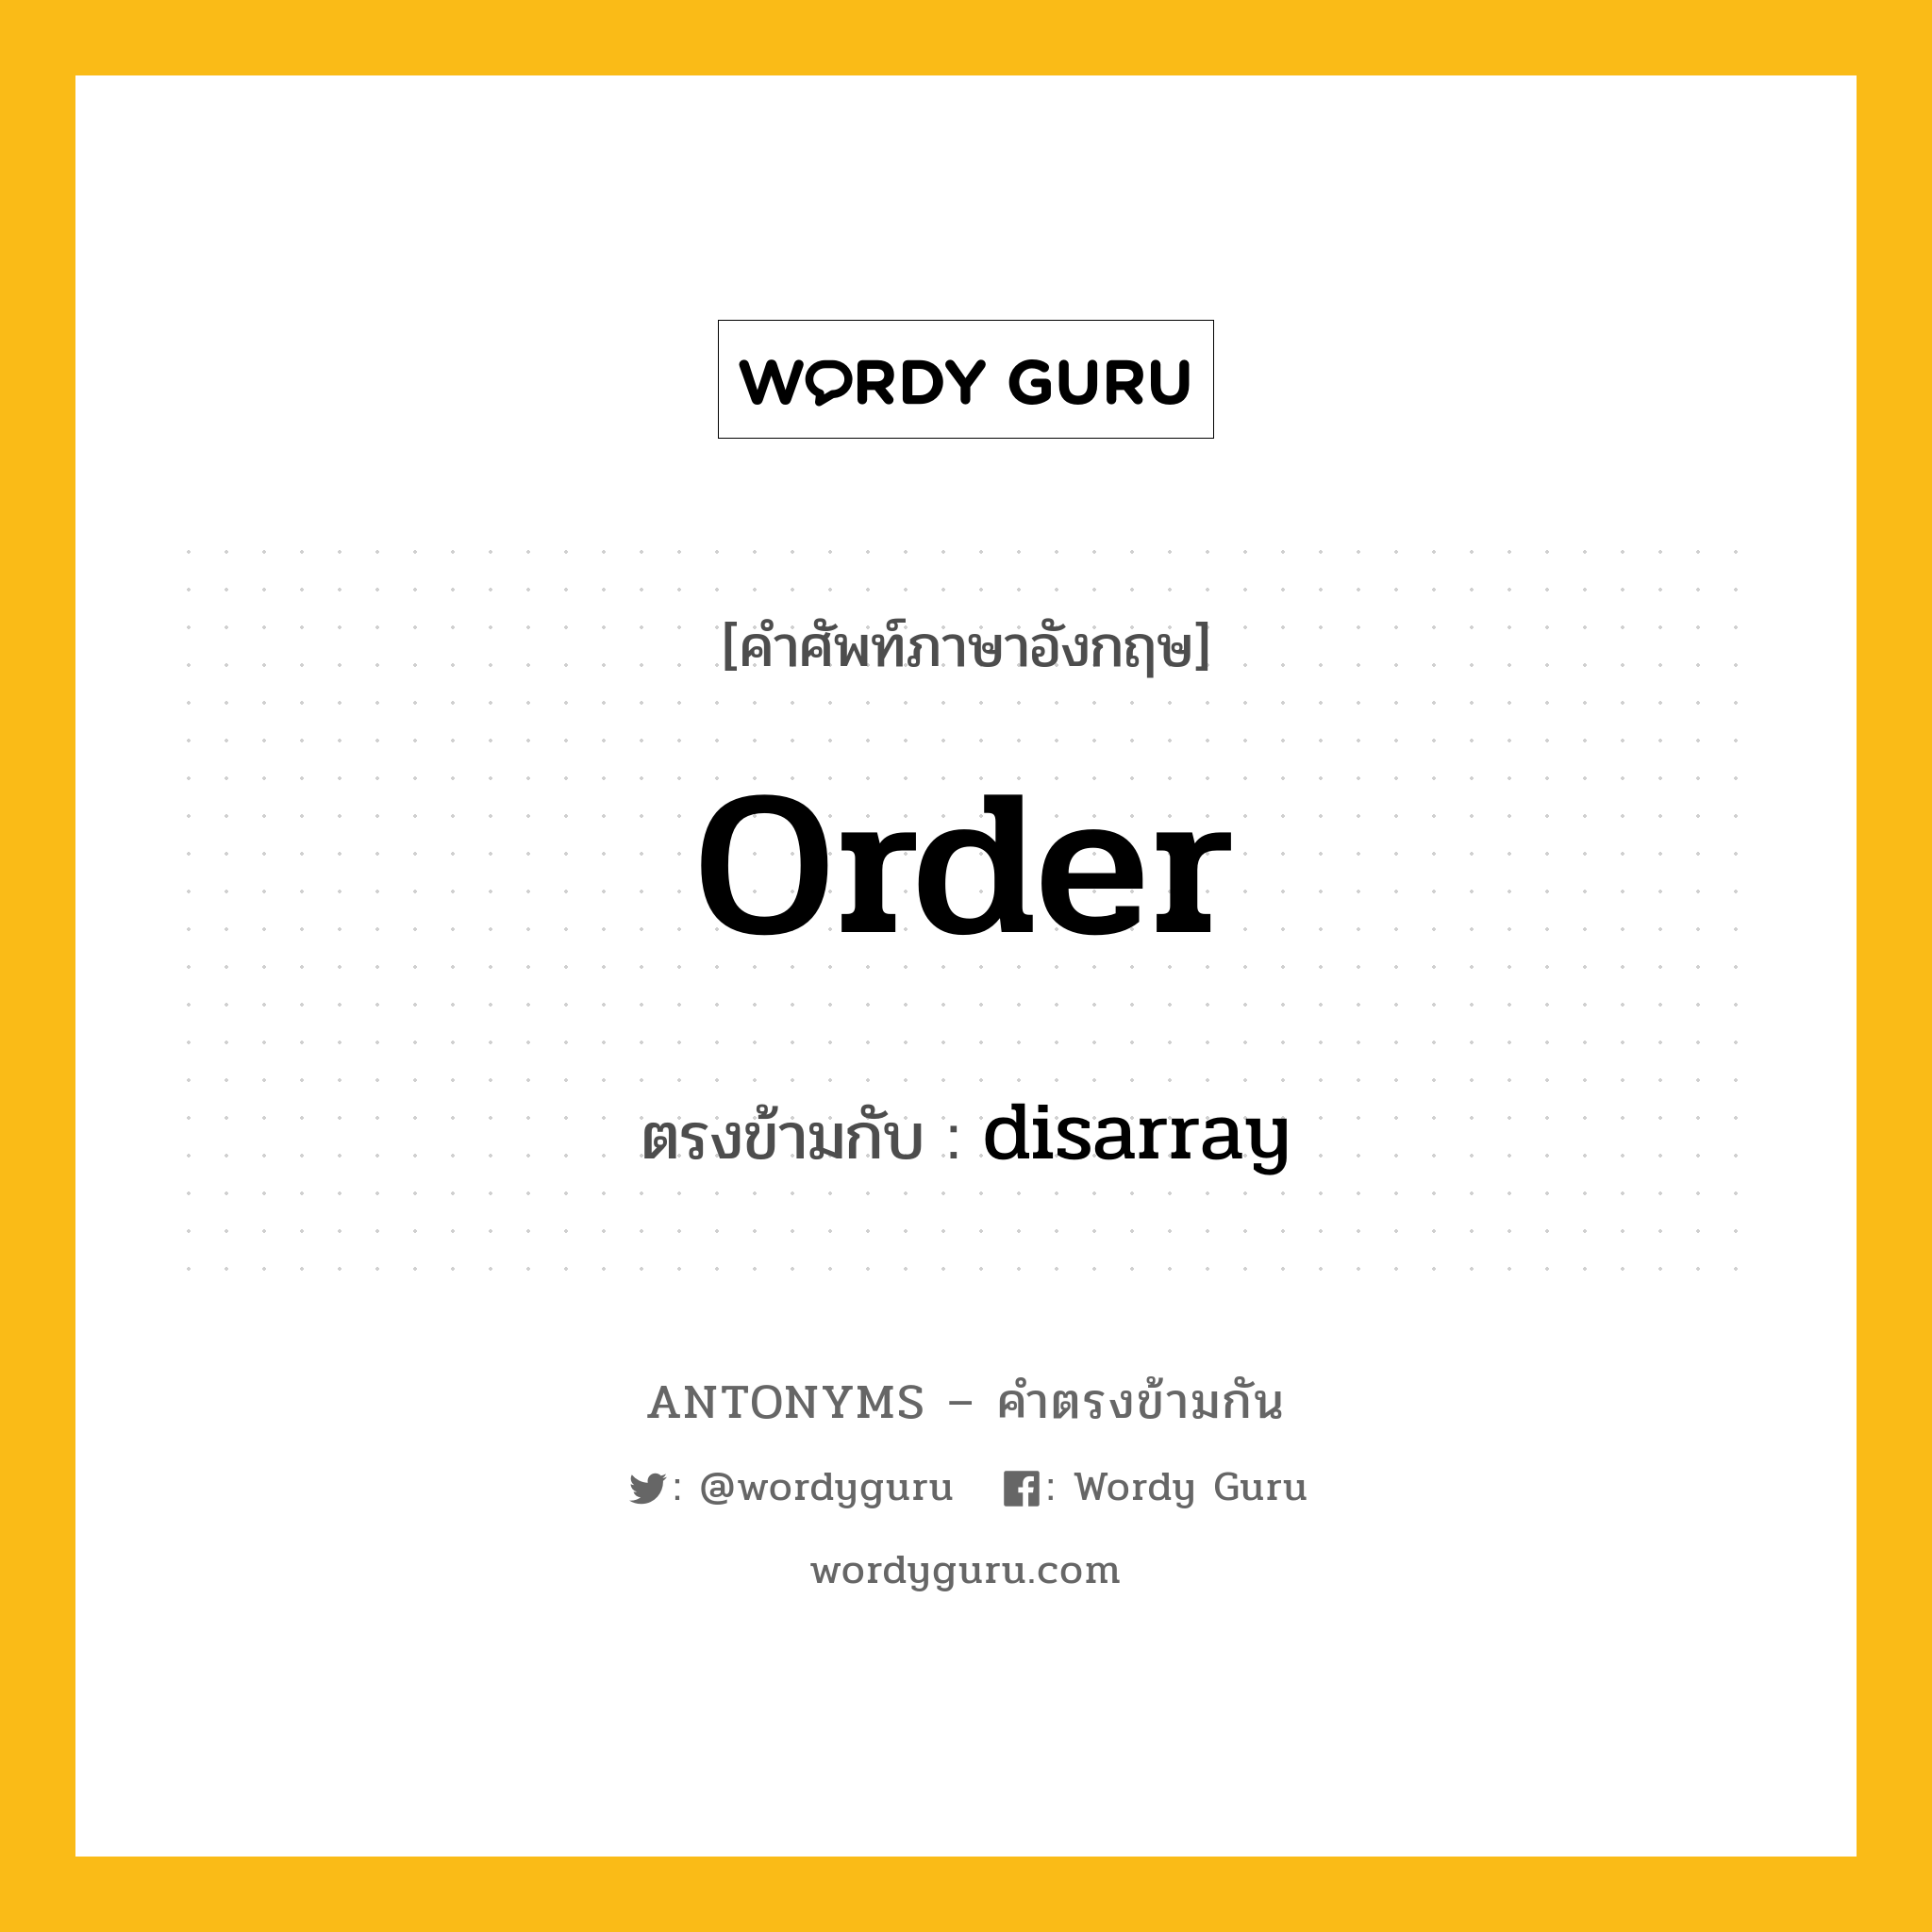 order เป็นคำตรงข้ามกับคำไหนบ้าง?, คำศัพท์ภาษาอังกฤษ order ตรงข้ามกับ disarray หมวด disarray